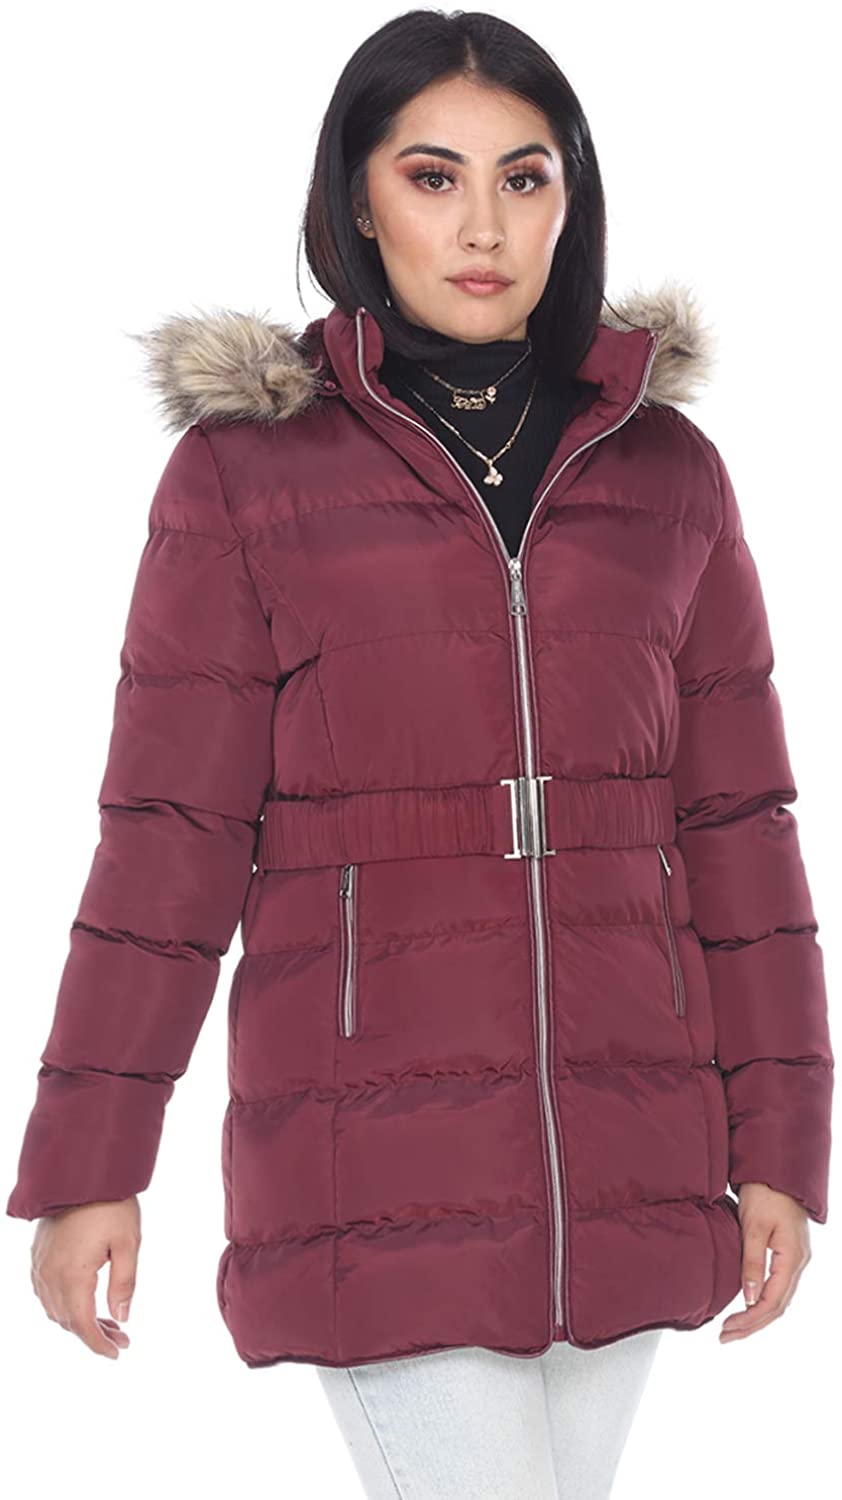 Facitisu Womens Winter Warm Jacket Long Down Faux Fur Hooded